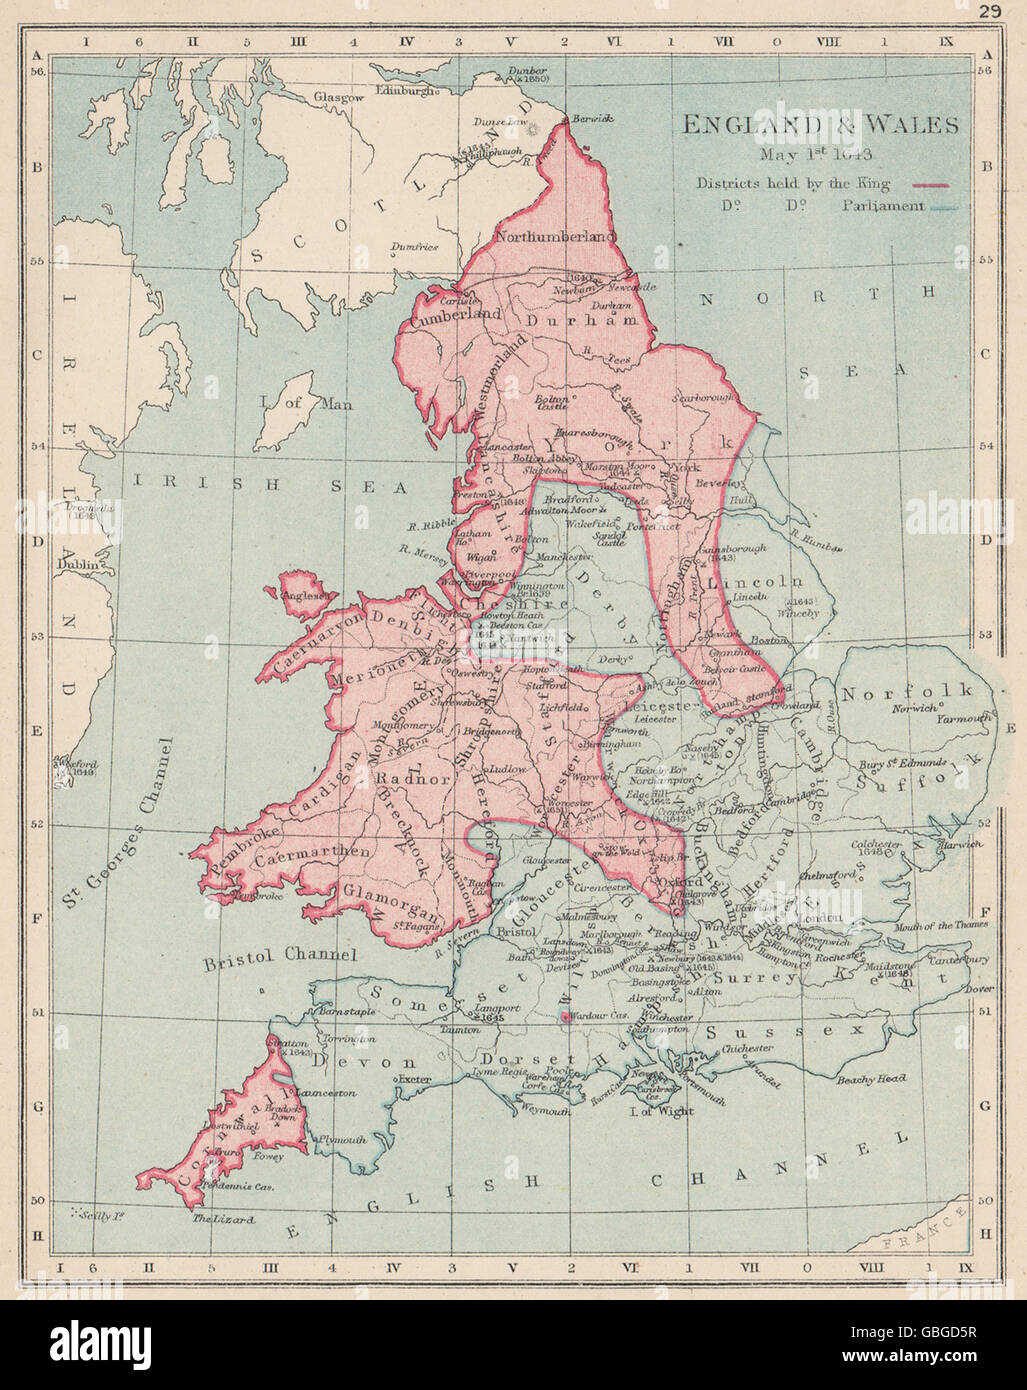 Guerra civil inglesa MAYO 1643:King(rojo)El Parlamento(azul).Las batallas/fechas, 1907 mapa Foto de stock